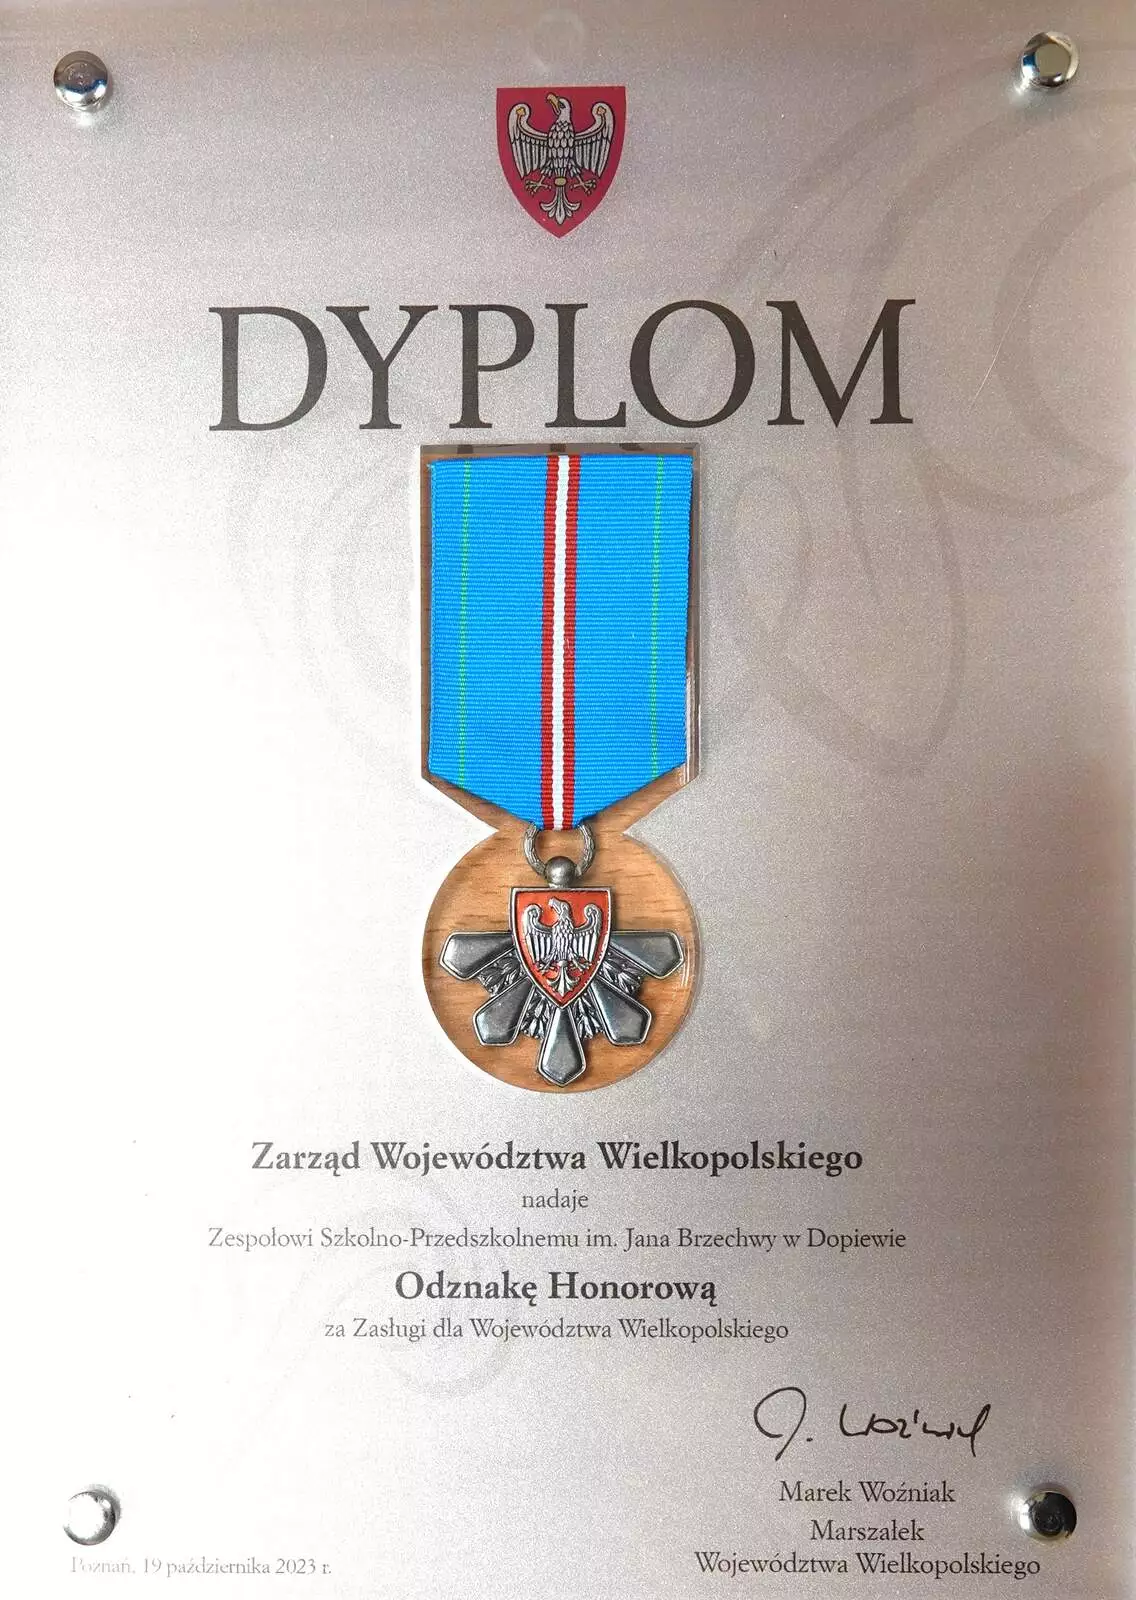 Honorowa Odznaka za Zasługi dla Województwa Wielkopolskiego